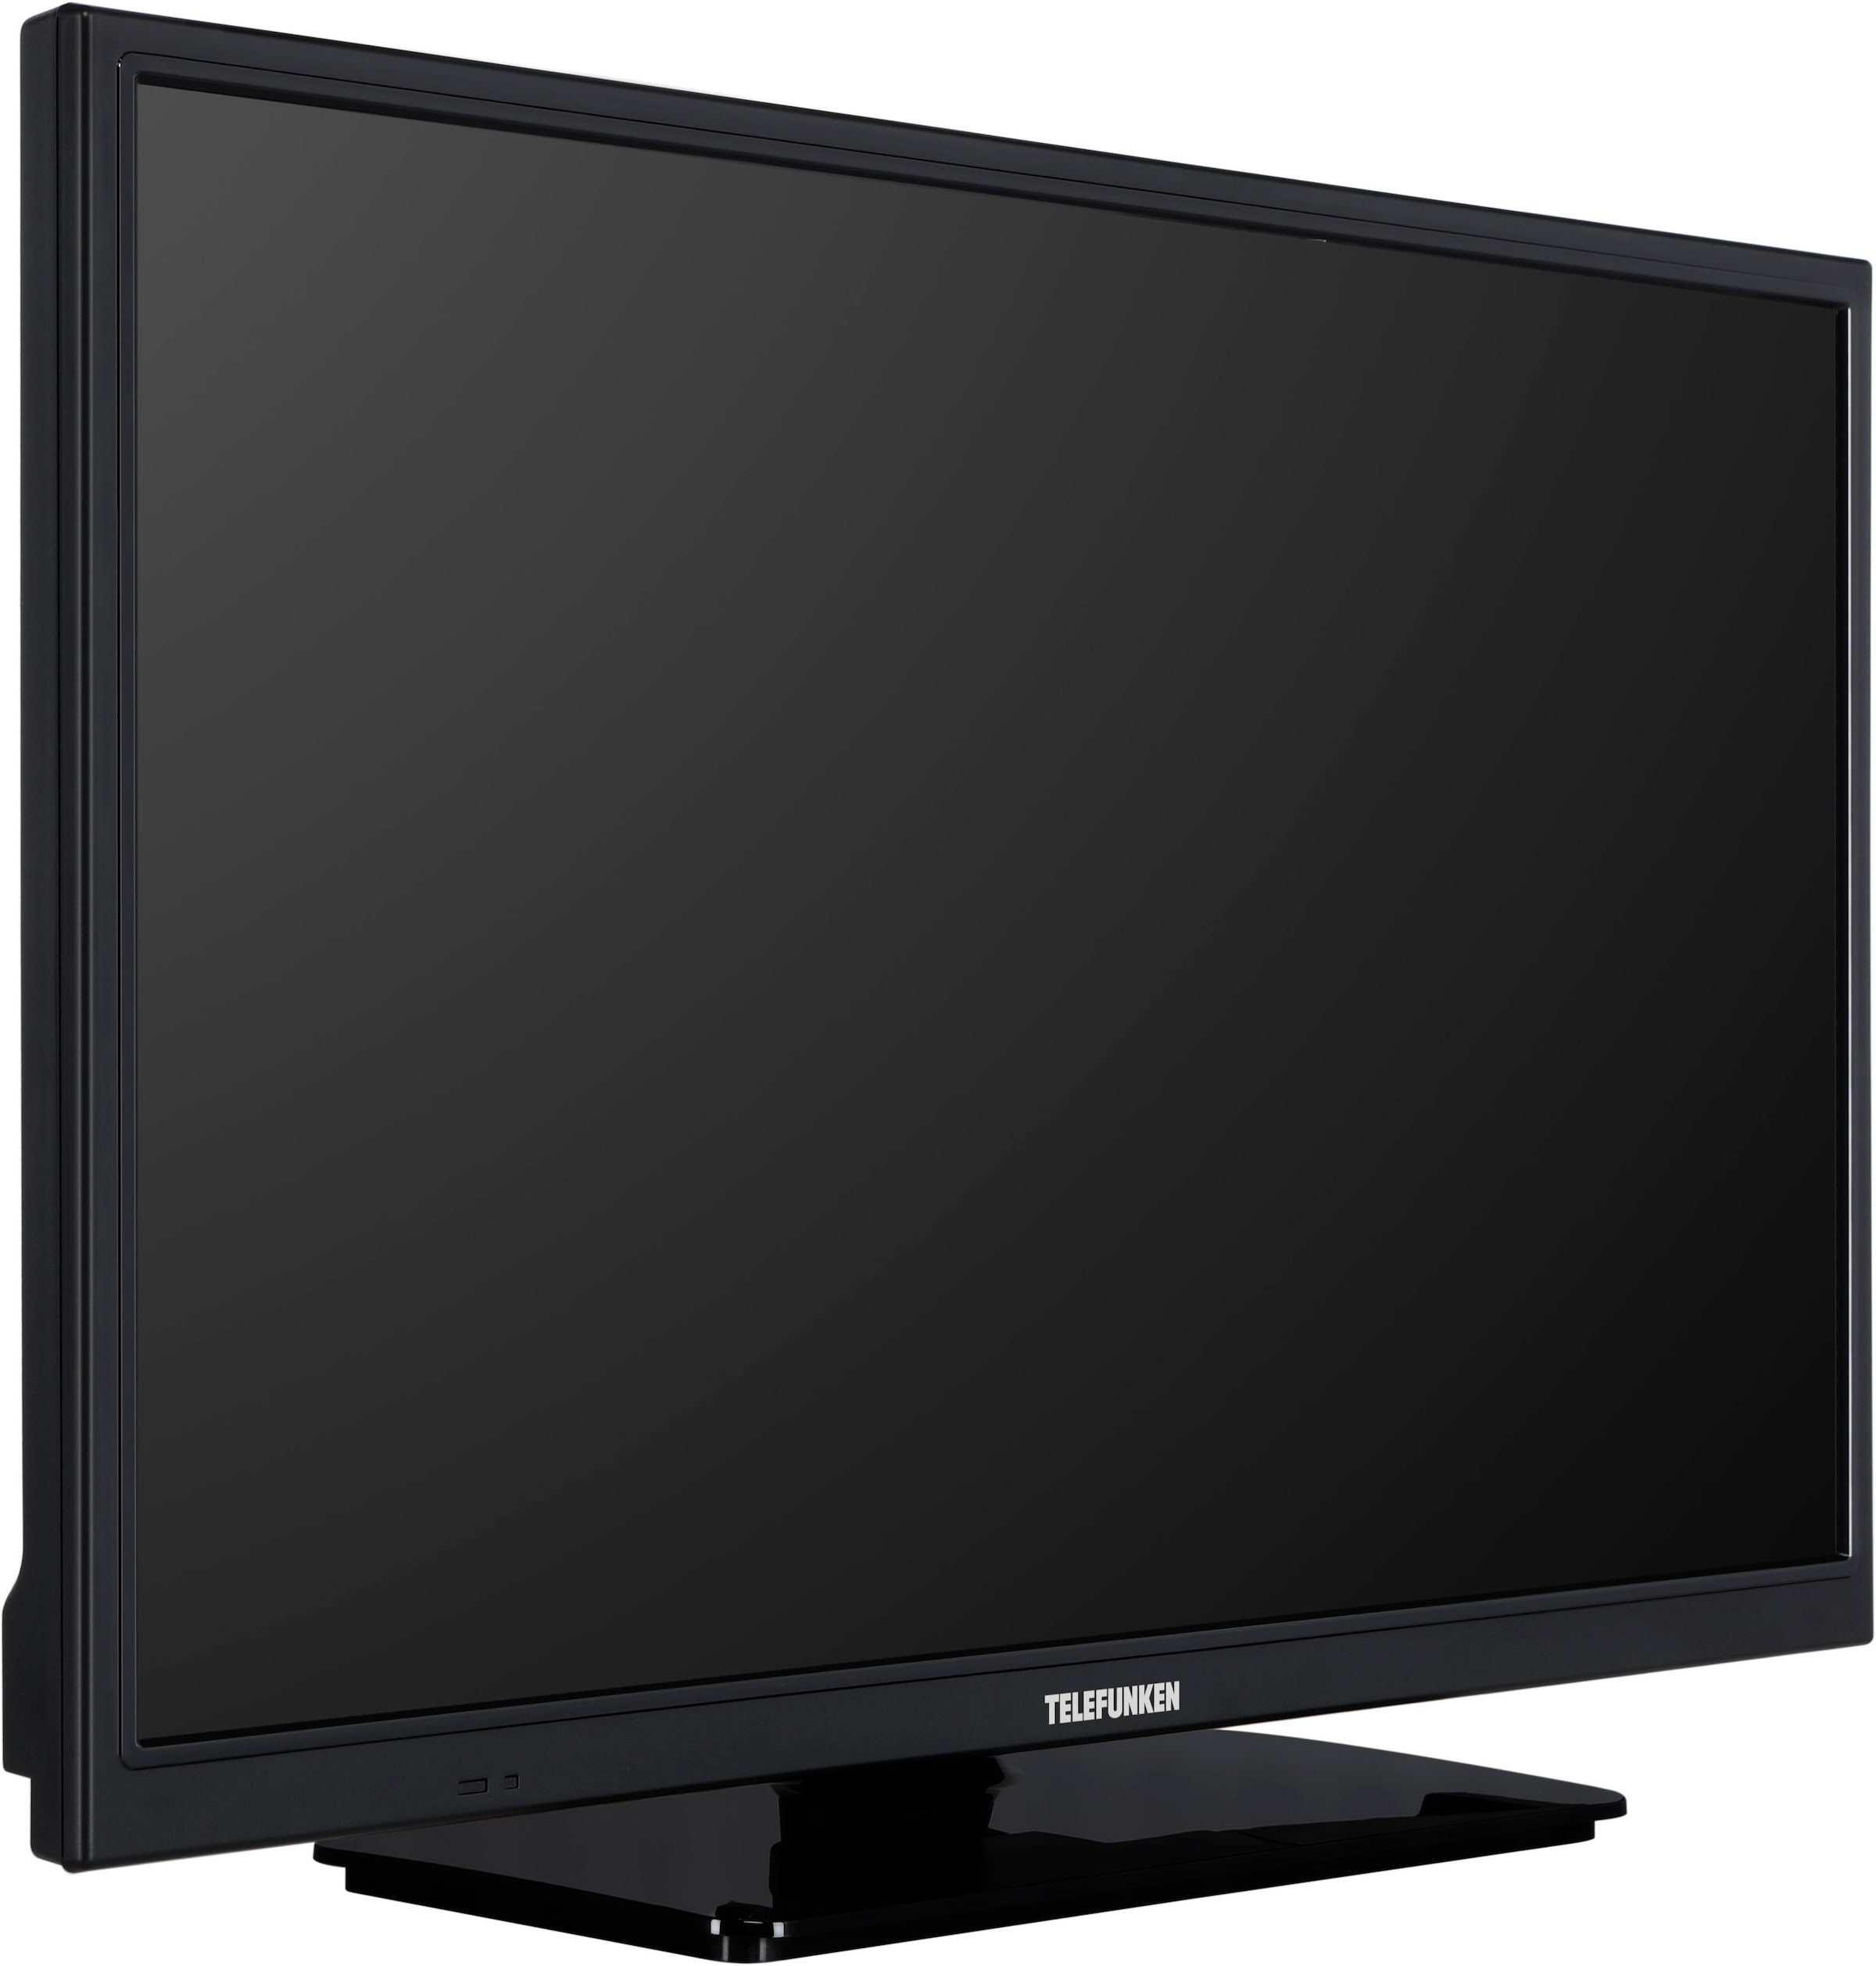 Telefunken LED-Fernseher, 60 cm/24 Zoll, HD-ready, Smart-TV